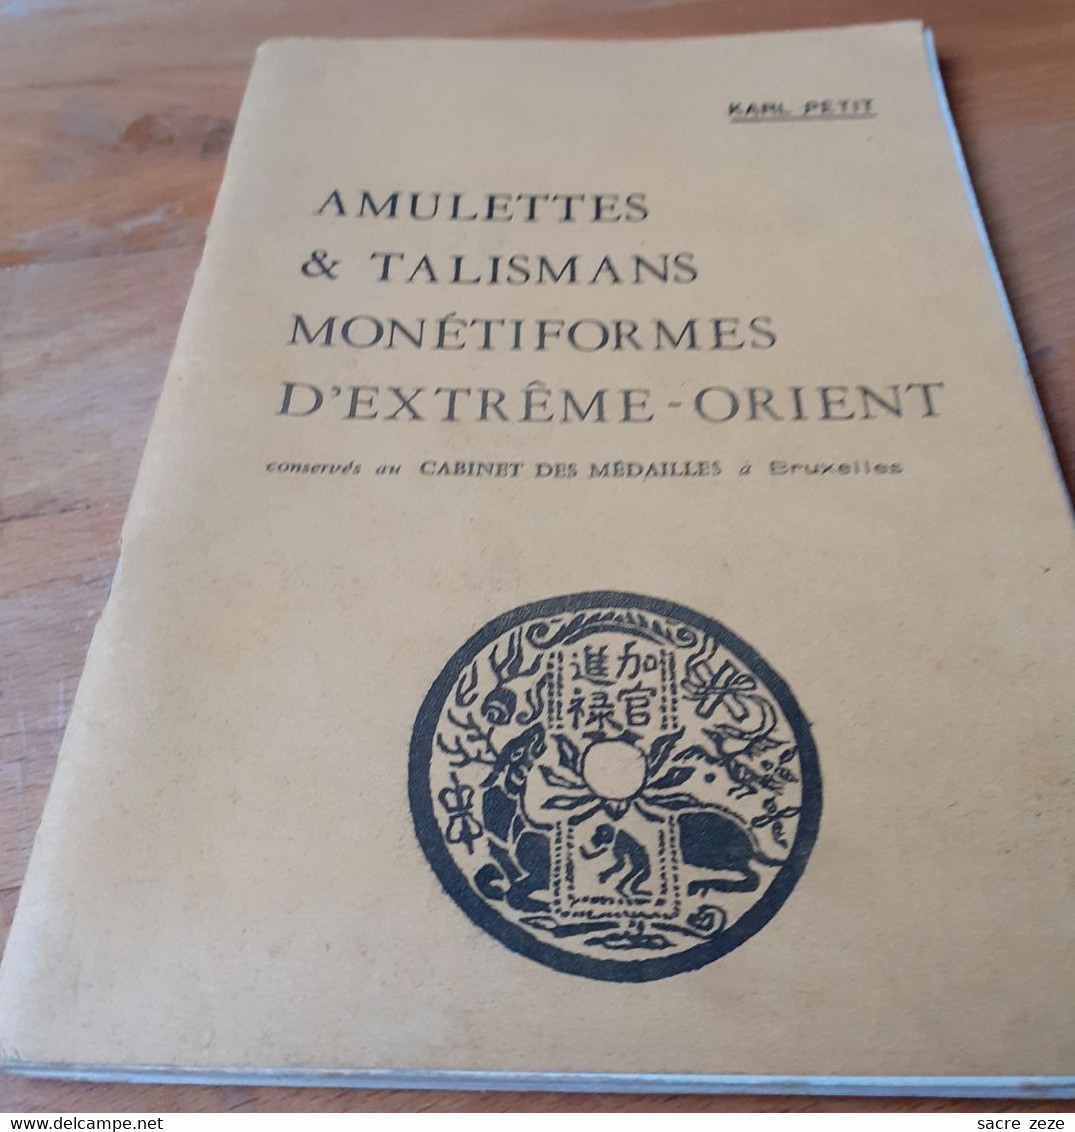 AMULETTES ET TALISMANS MONETIFORMES D'EXTRENE-ORIENT-1976-KARL PETIT - Livres & Logiciels